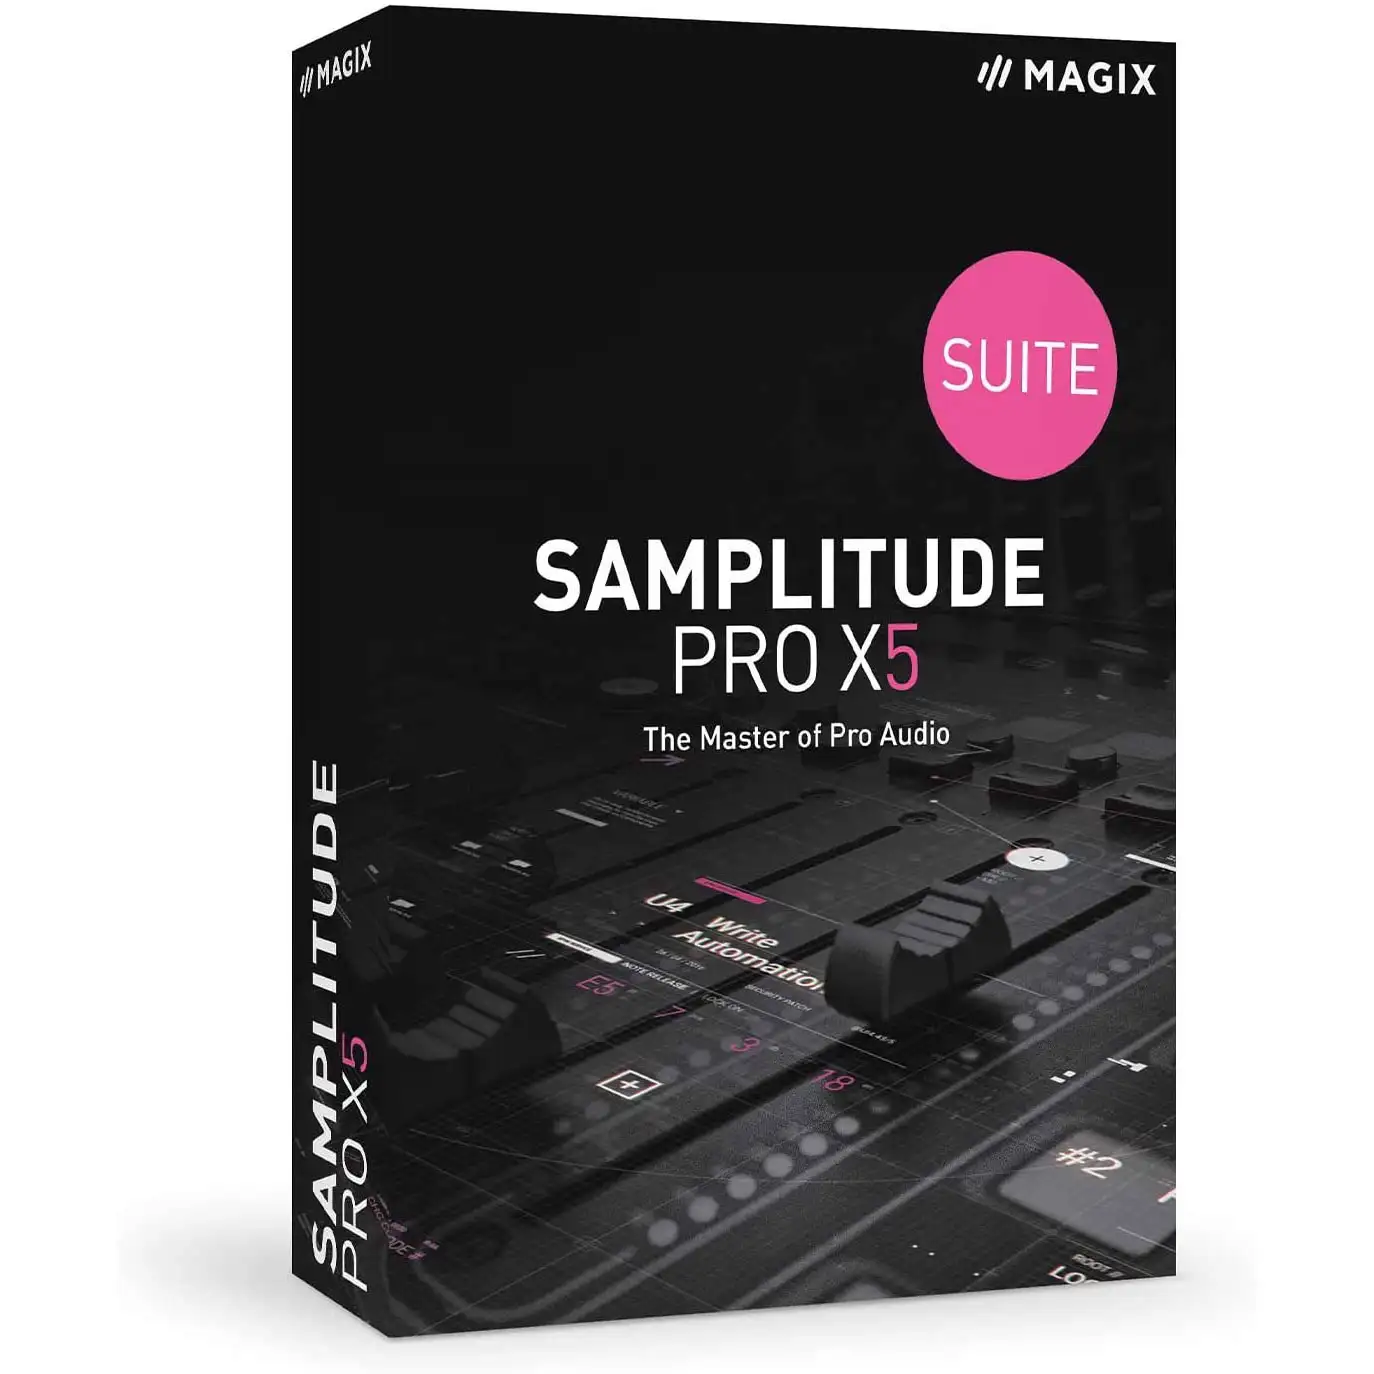 magix-samplitude-pro-x5-suite_156457_1